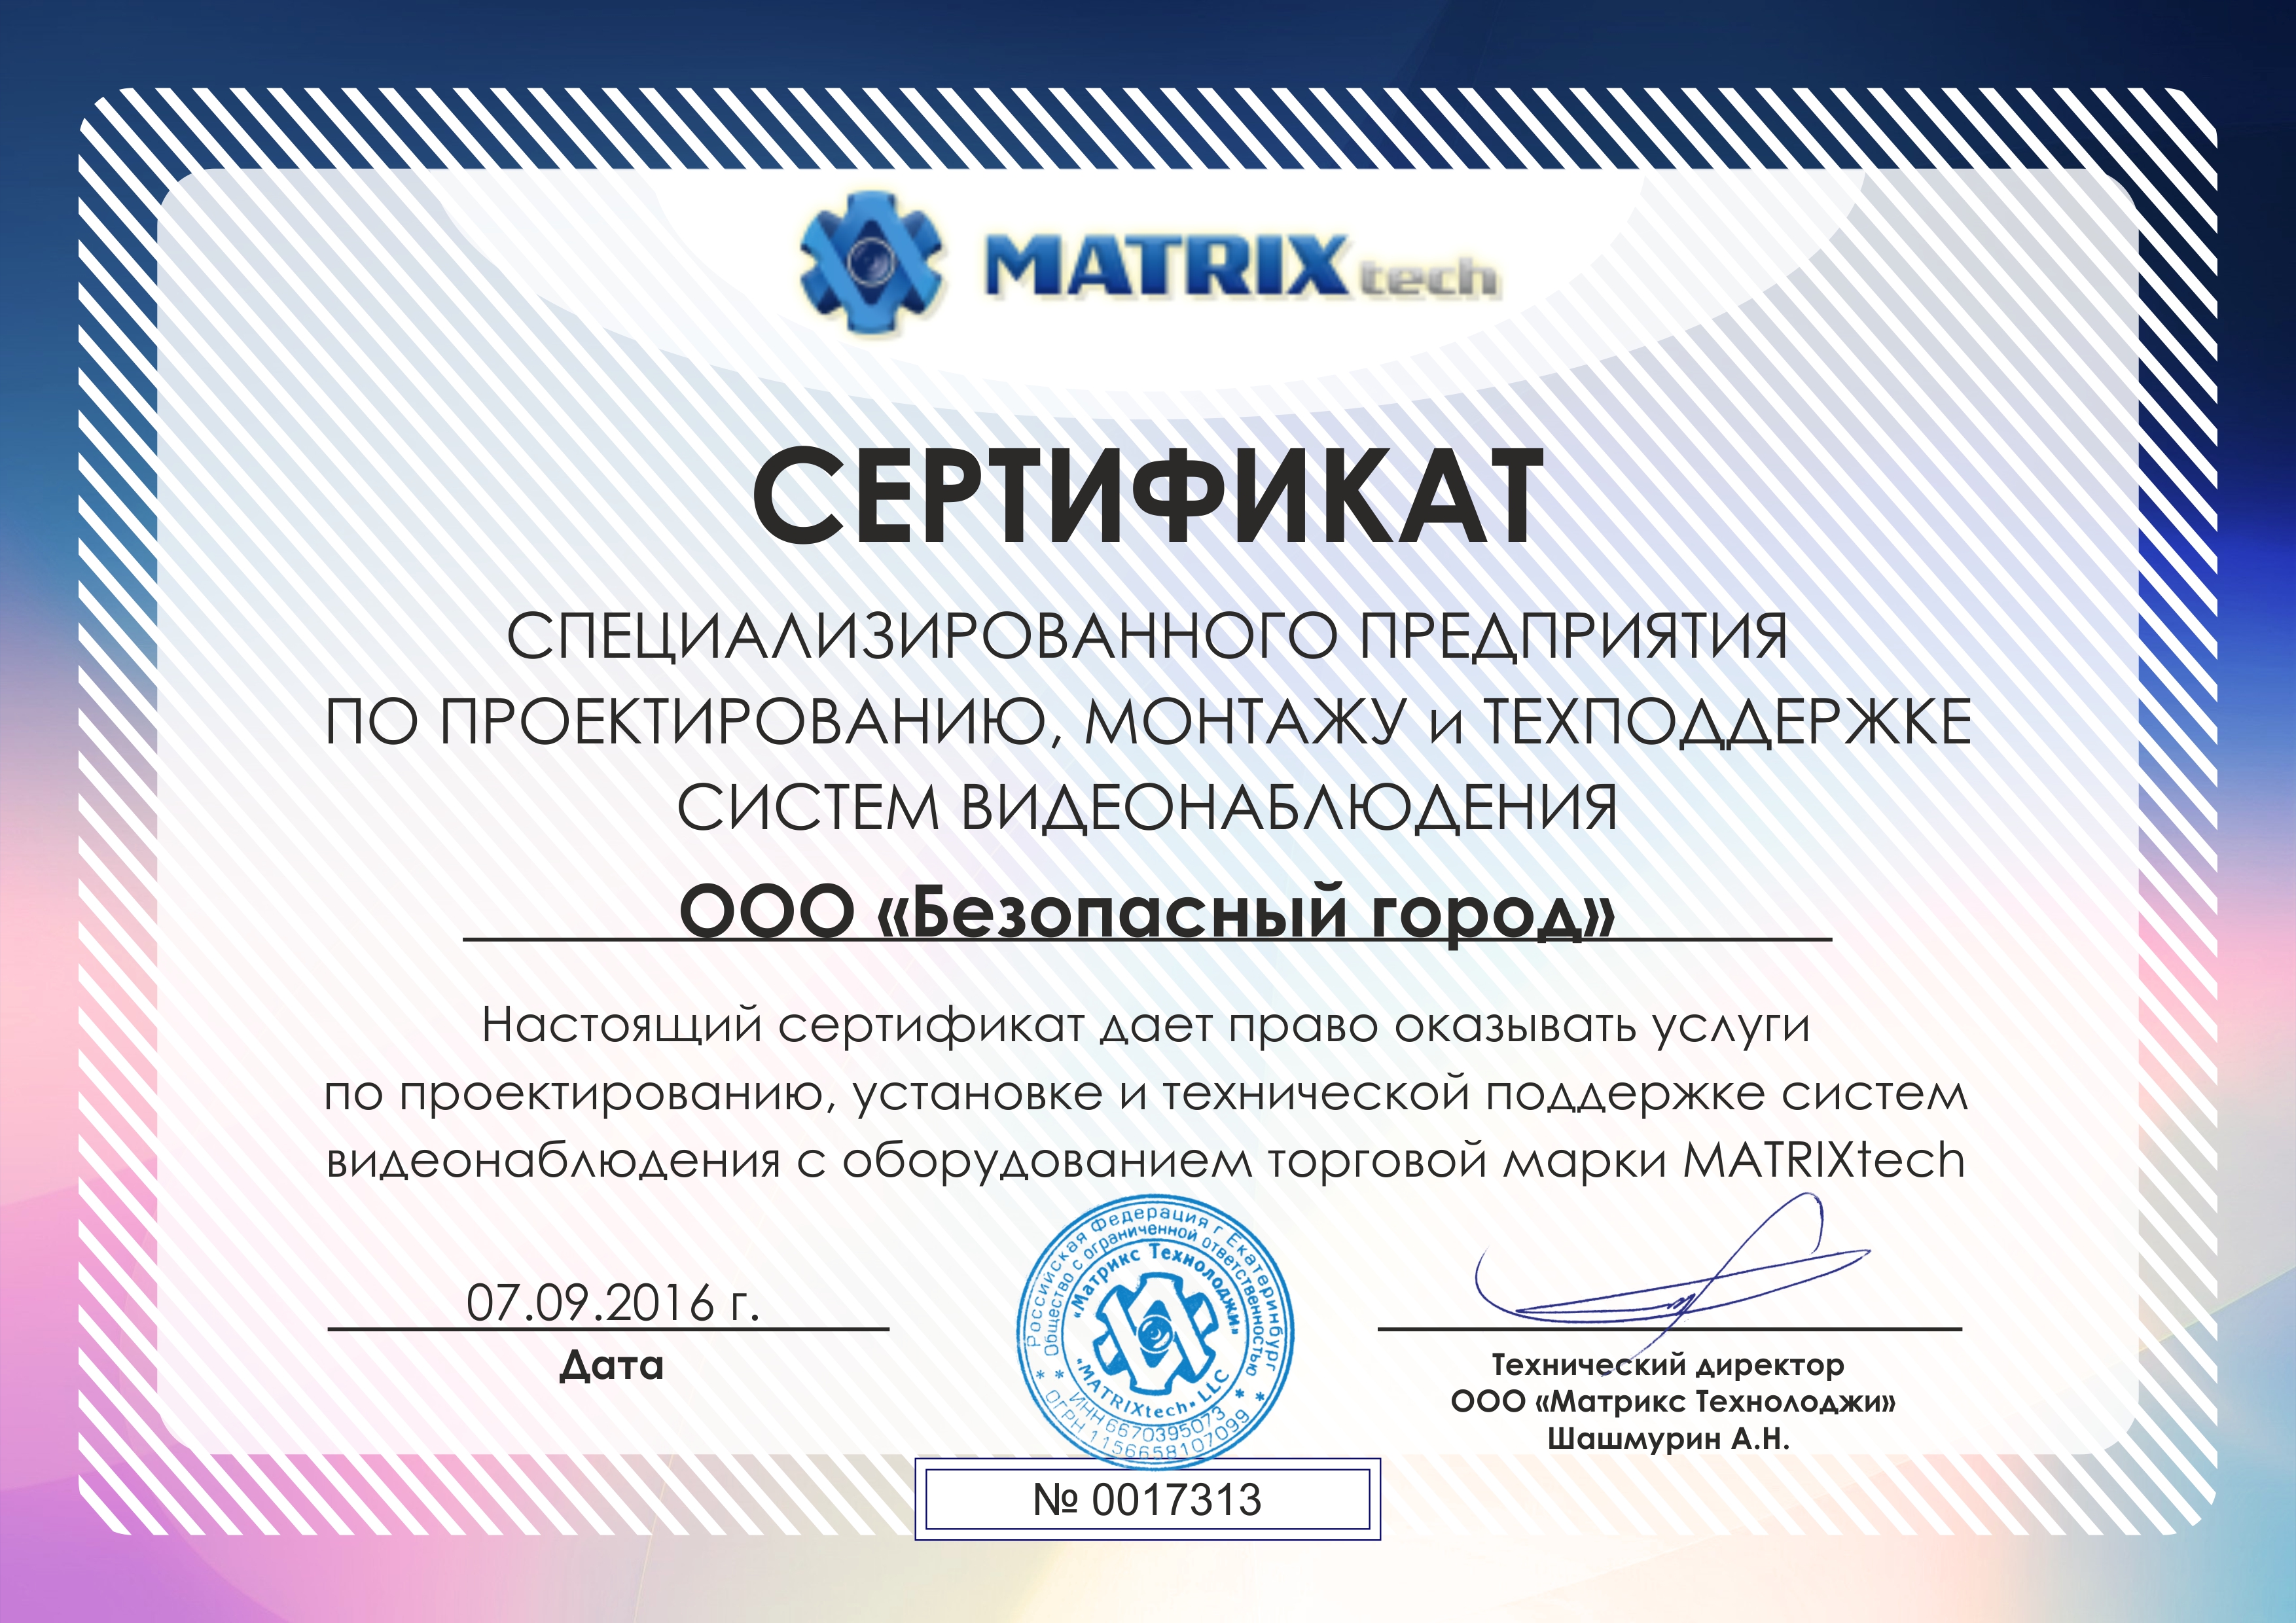 Сертификат от компании MATRIXtech